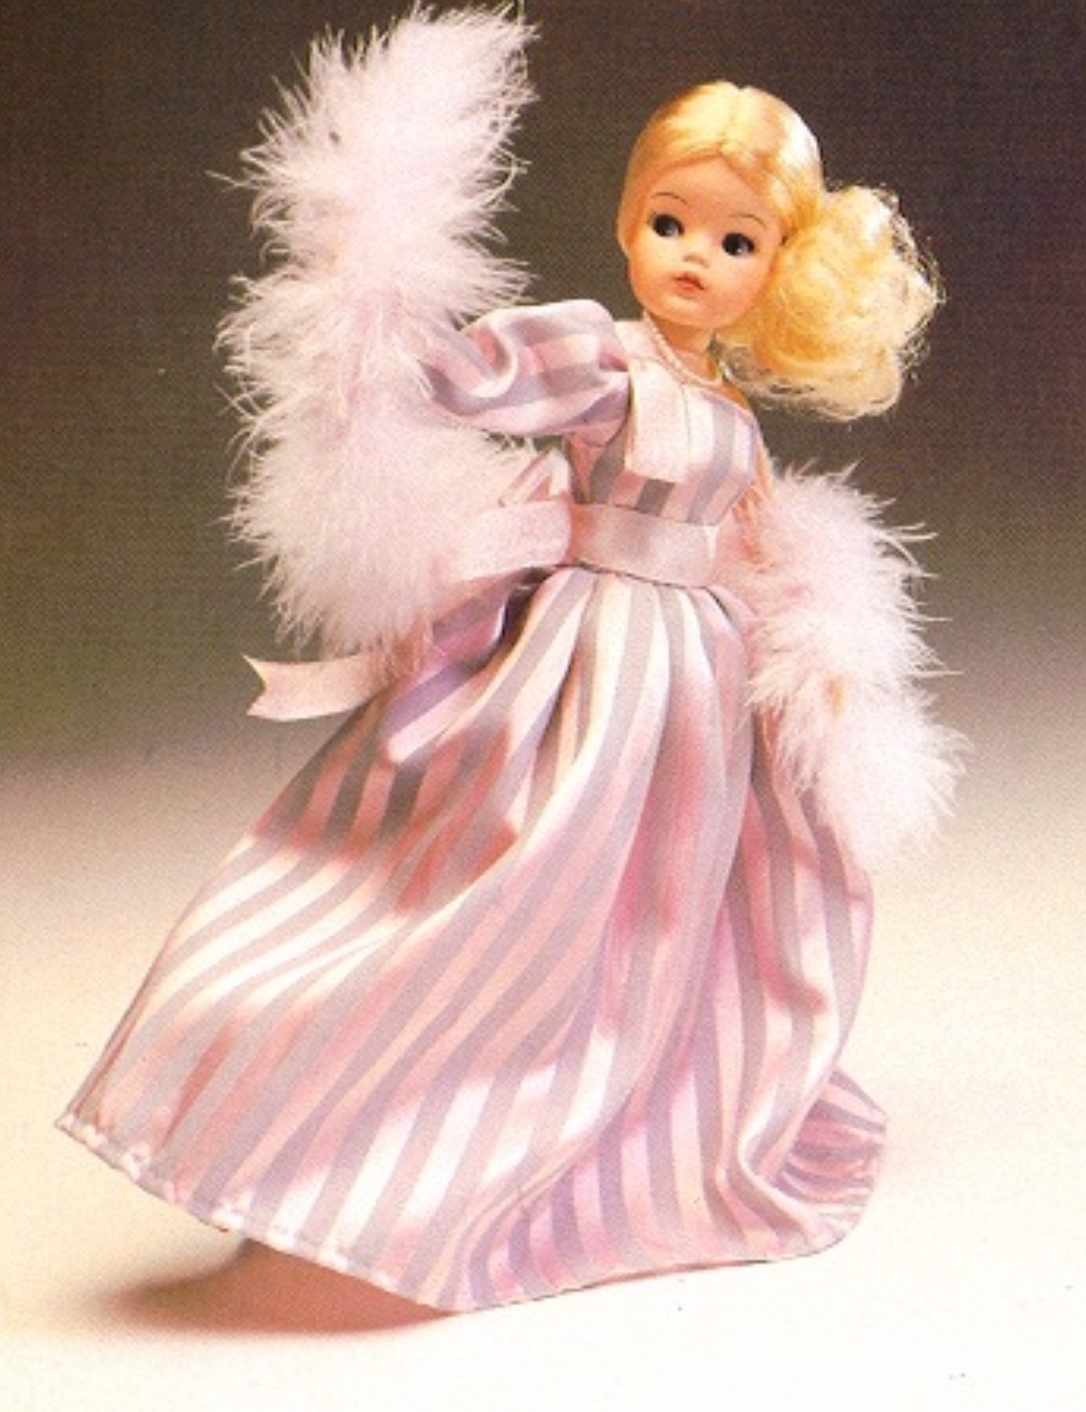 1985 Pedigree Sindy Fashion Doll Elegance Sugar Candy Dress